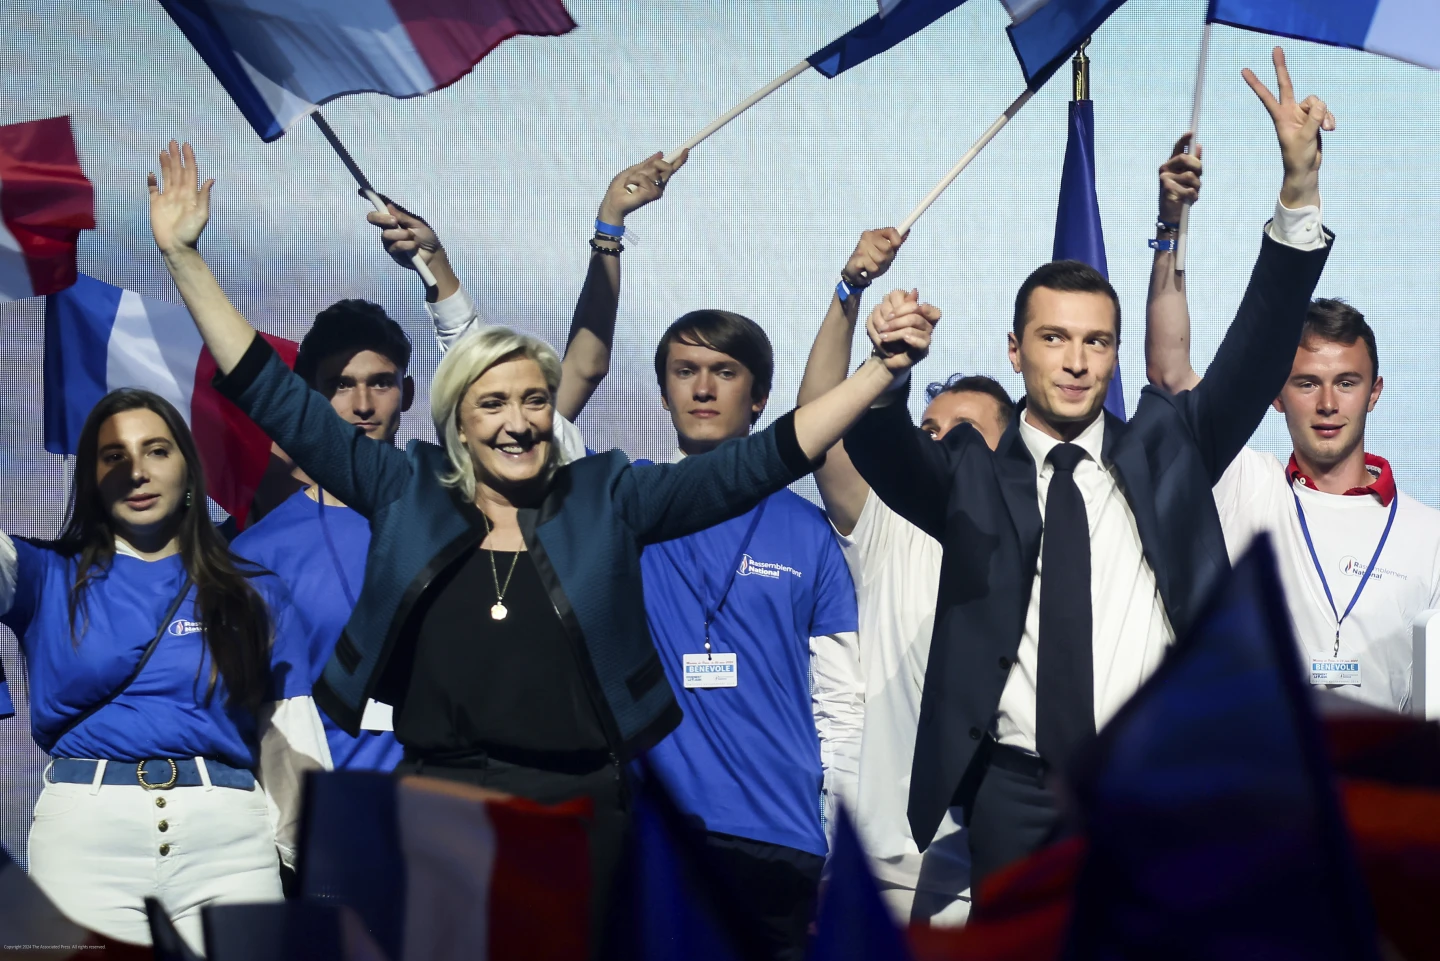 سقوط آزاد فرانسه و آلمان؛ آیا انقلاب جدیدی در راه است؟